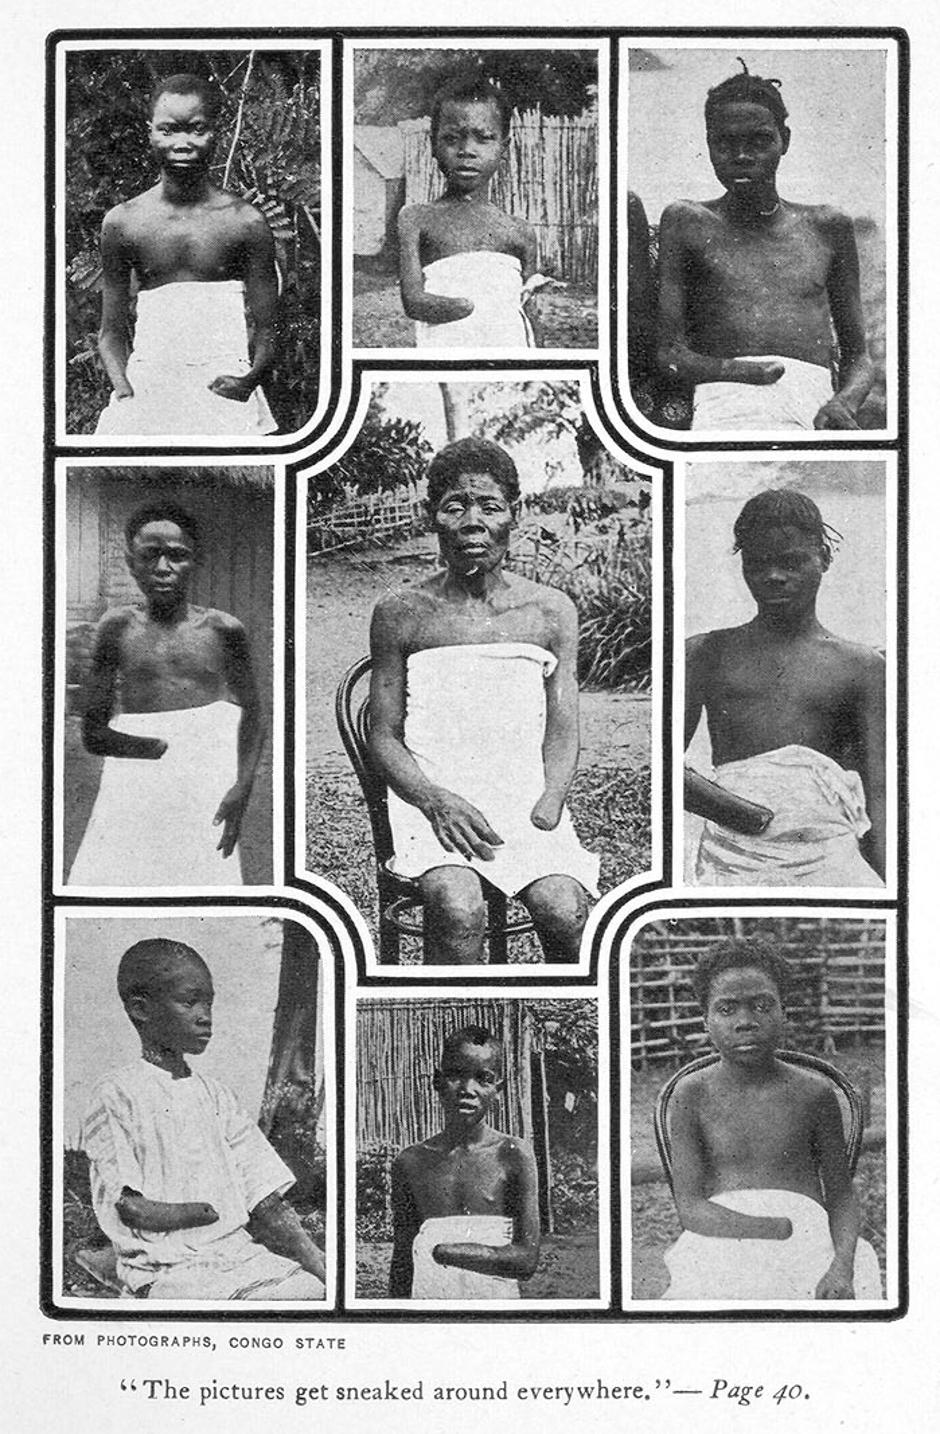 Belgijski kralj Leopold II i njegov afrički genocid | Author: Wikipedia